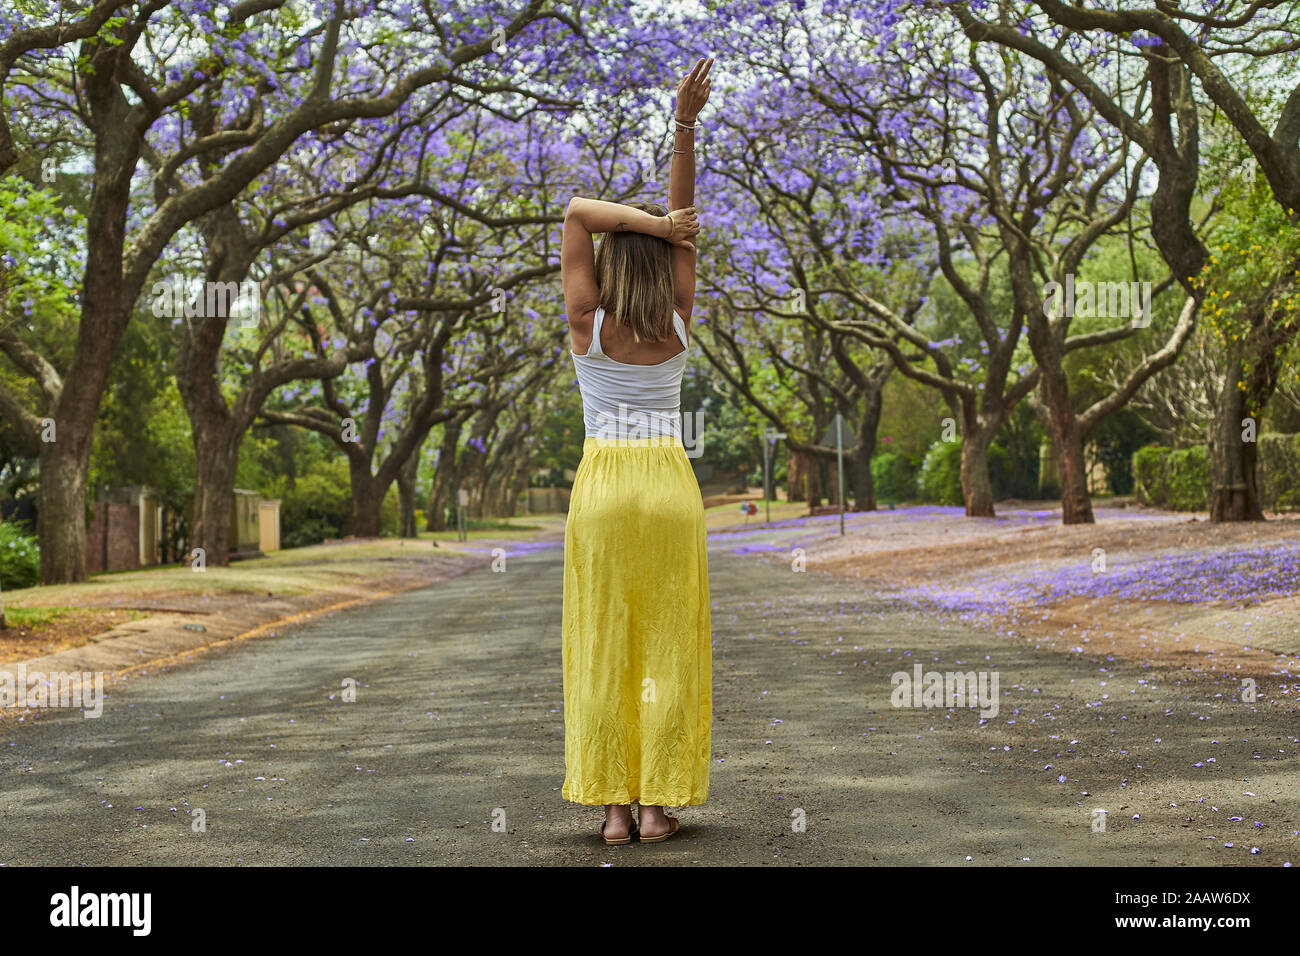 La donna al centro di una strada piena di alberi di jacaranda in fioritura, Pretoria, Sud Africa Foto Stock